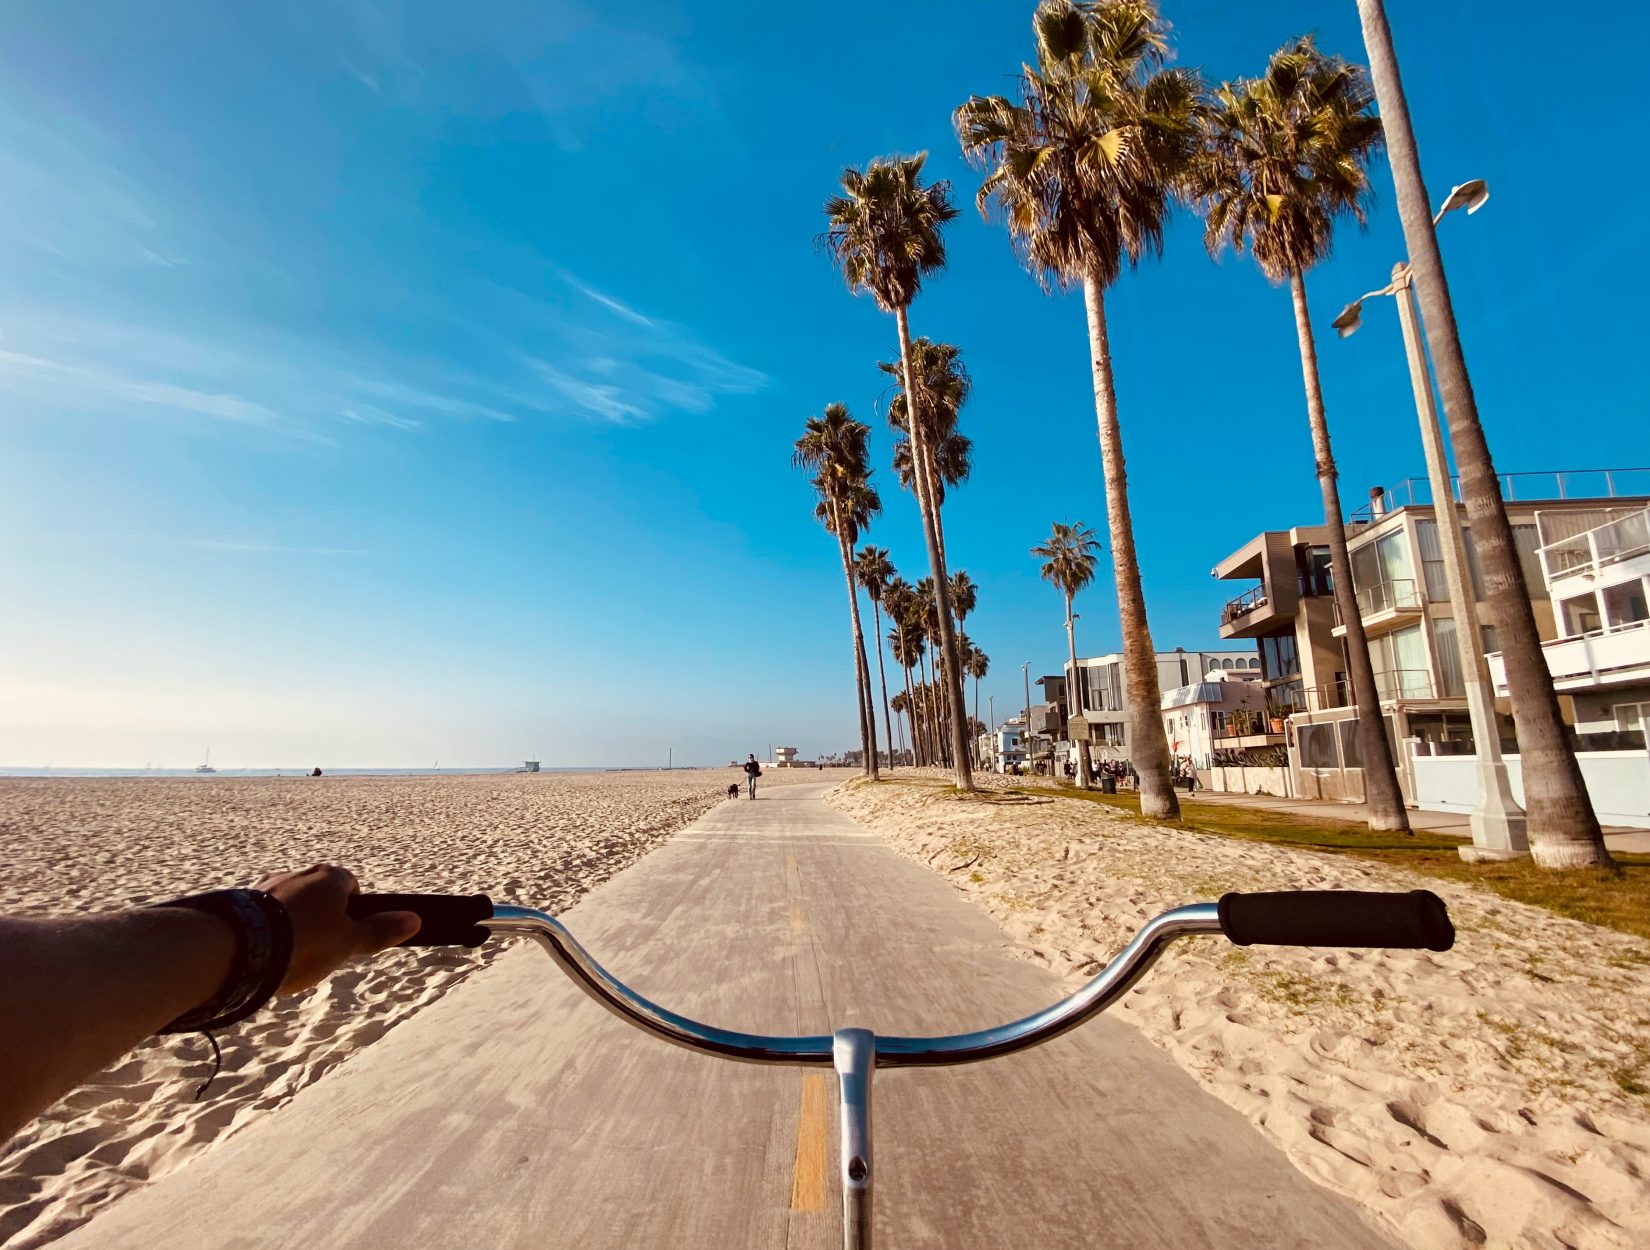 E-bike on the Strand bike path in Los Angeles, California